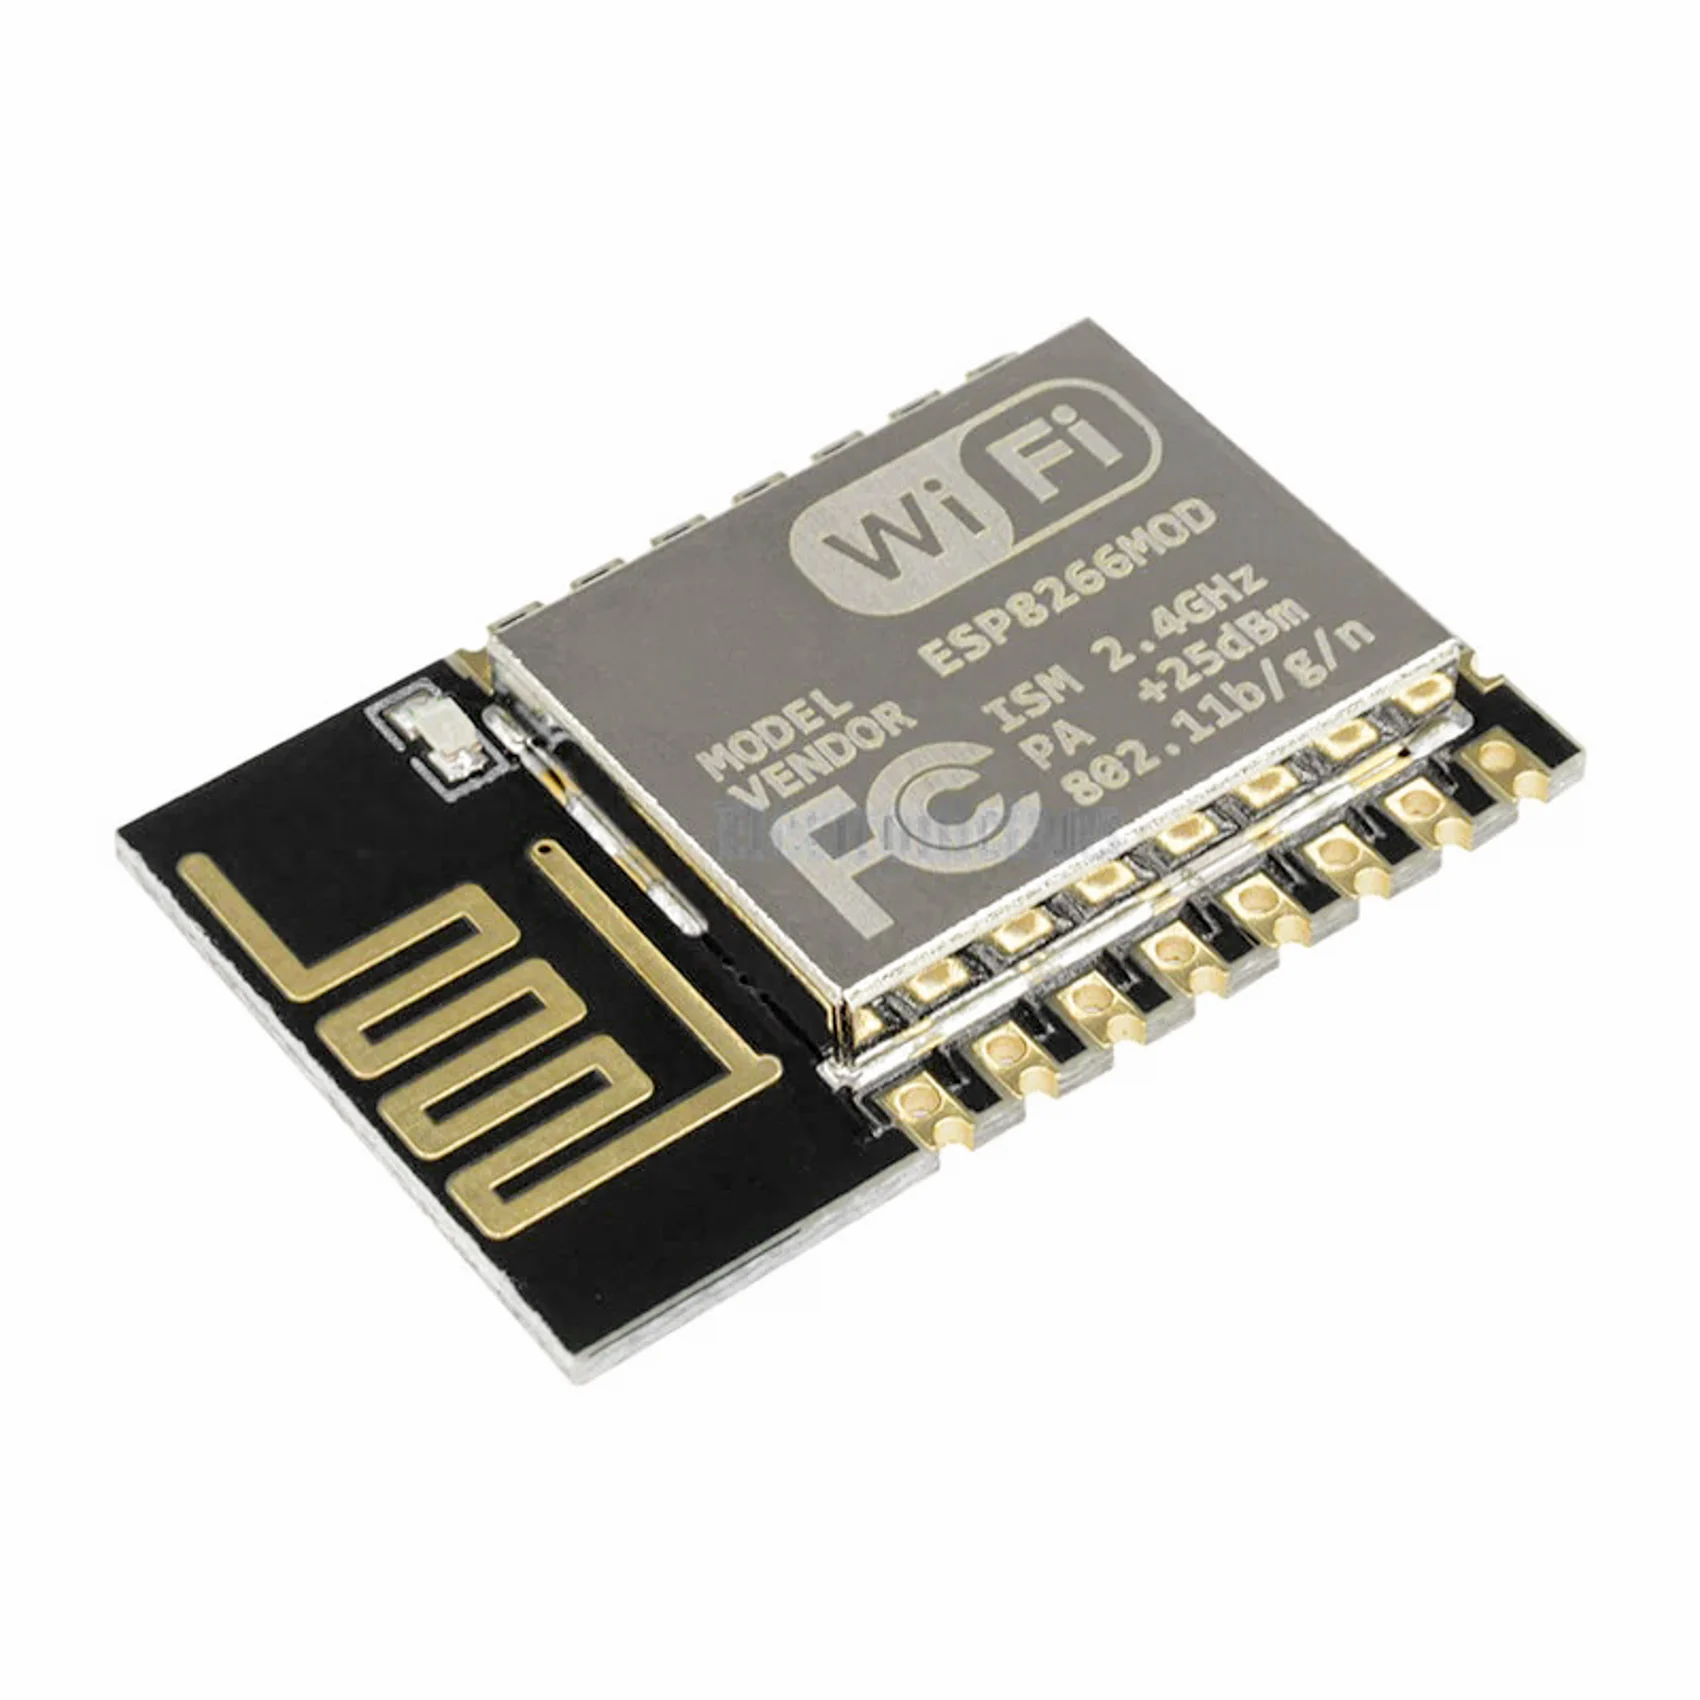 ESP-12E ESP8266 Serial Port WIFI Wireless Transceiver Module For Arduino